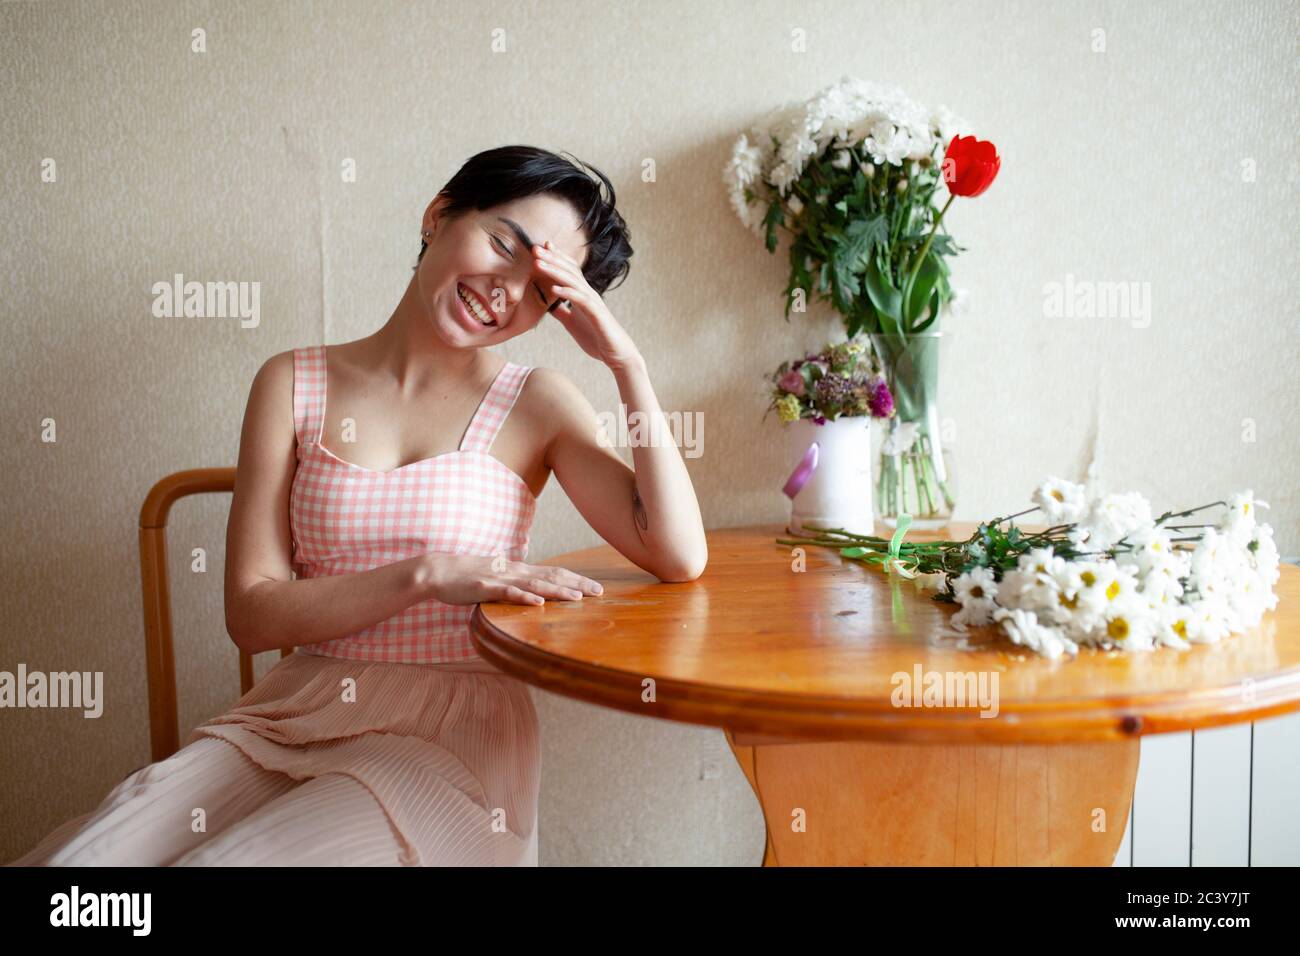 Jeune femme assise à table avec des fleurs Banque D'Images